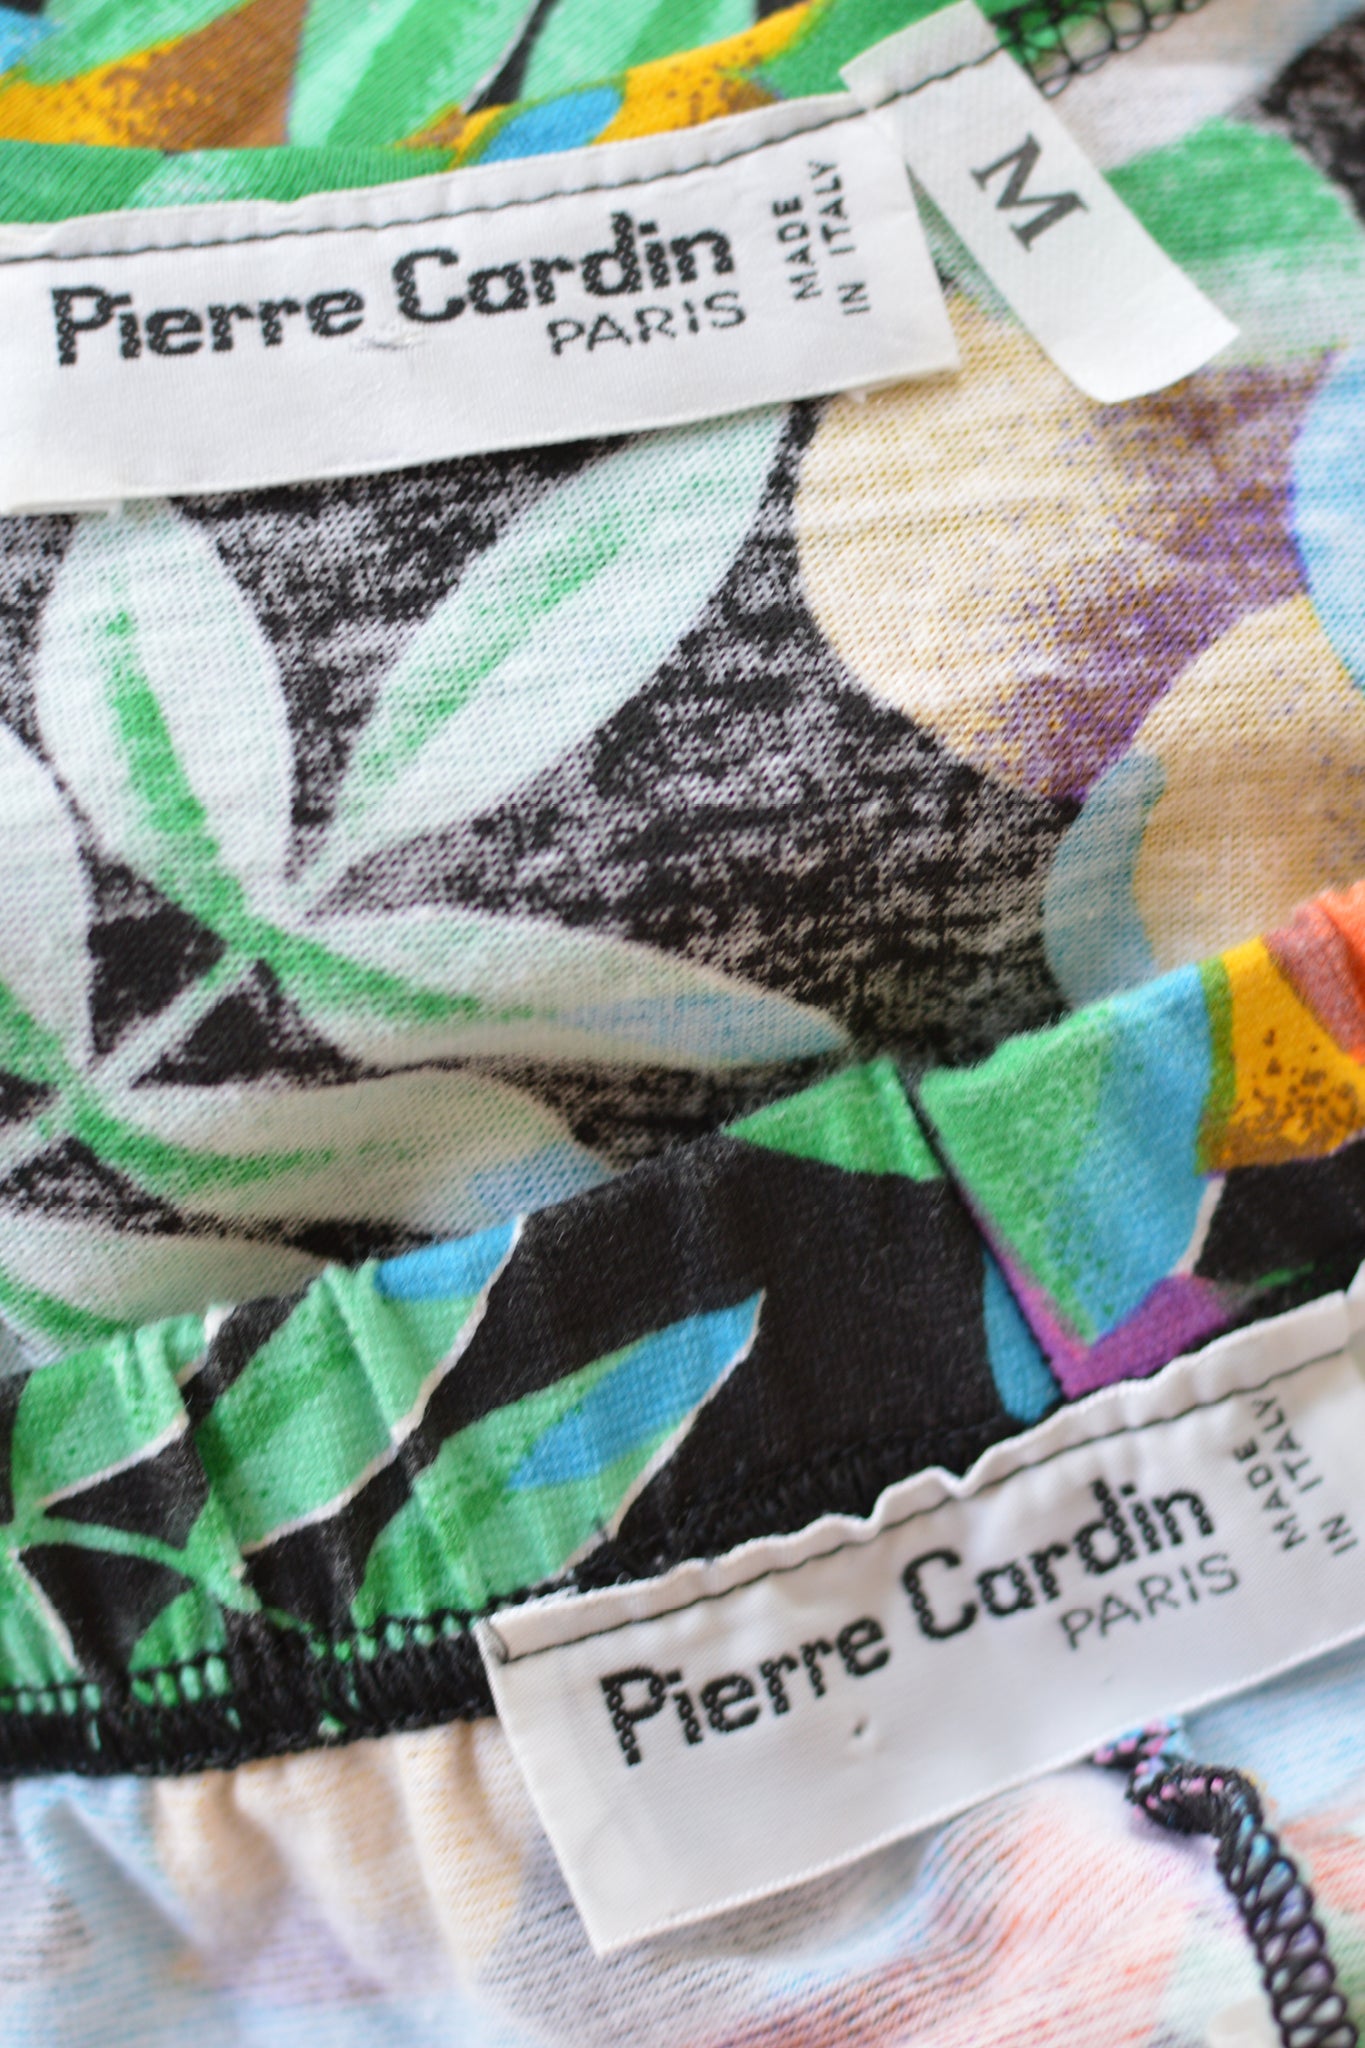 Pierre Cardin - Pierre Cardin  - Jersey Printed Set